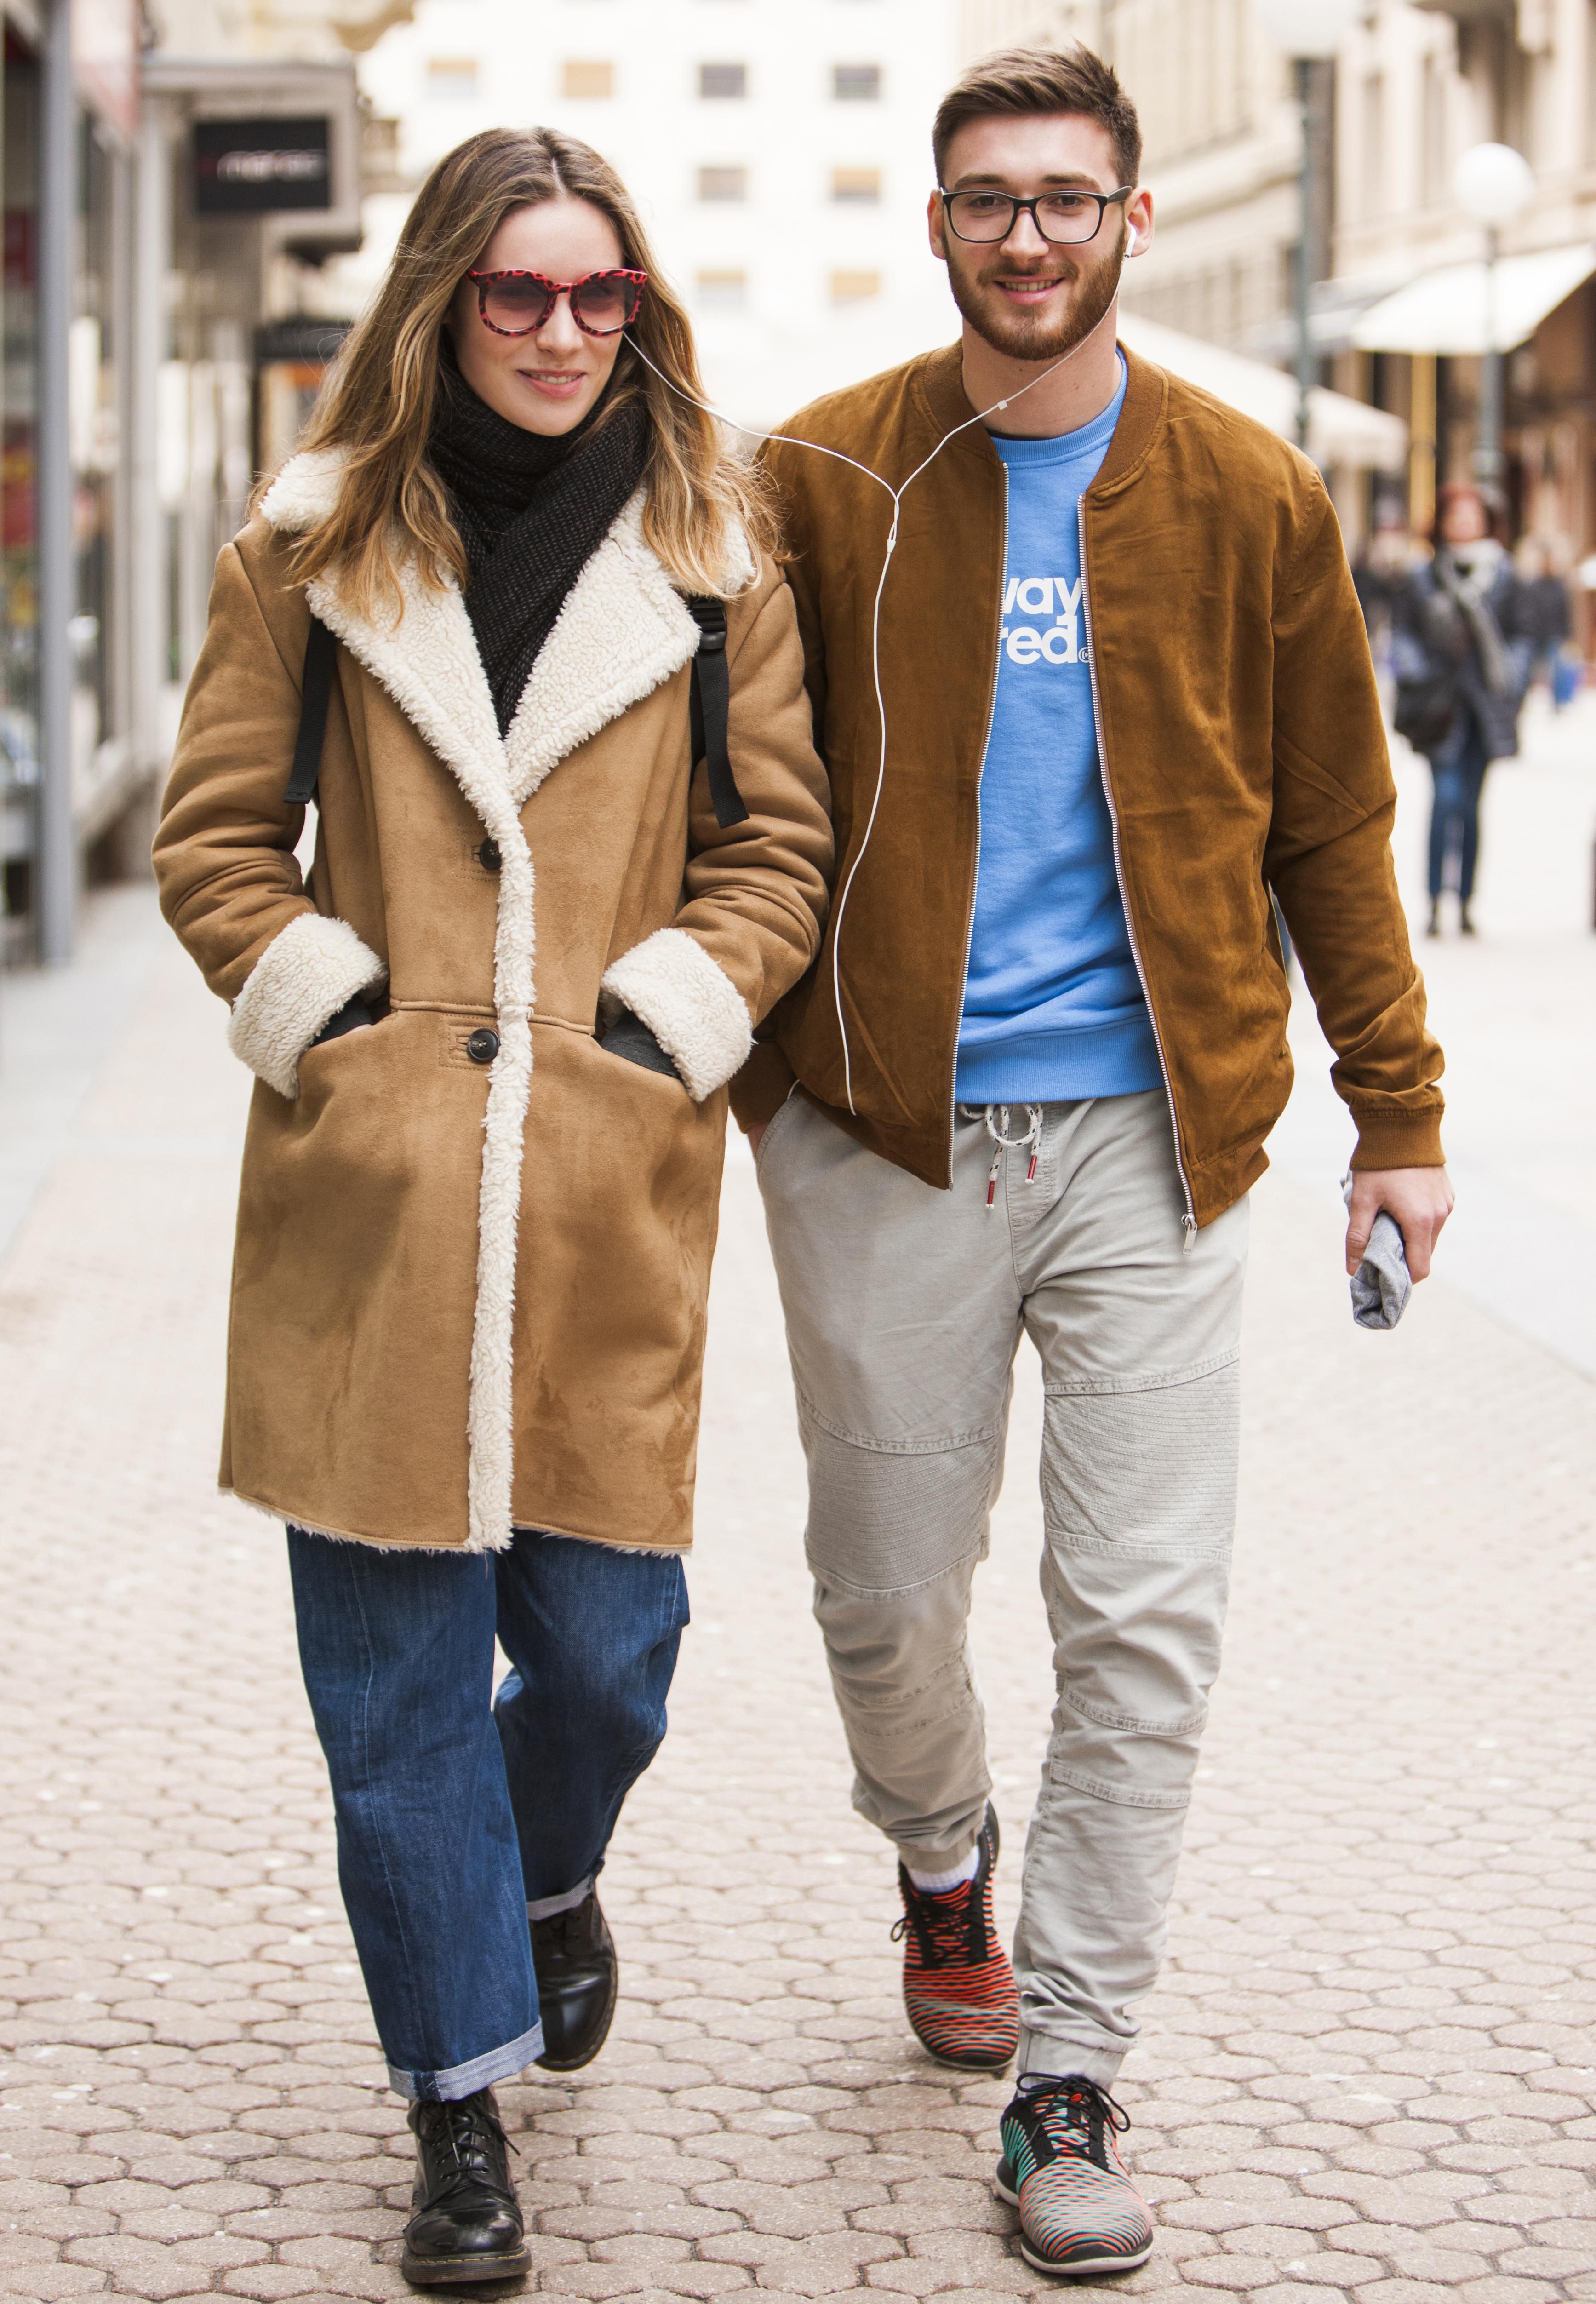 Pogledajte brata i sestru koji obožavaju modu i zajedničke odlaske u shopping!